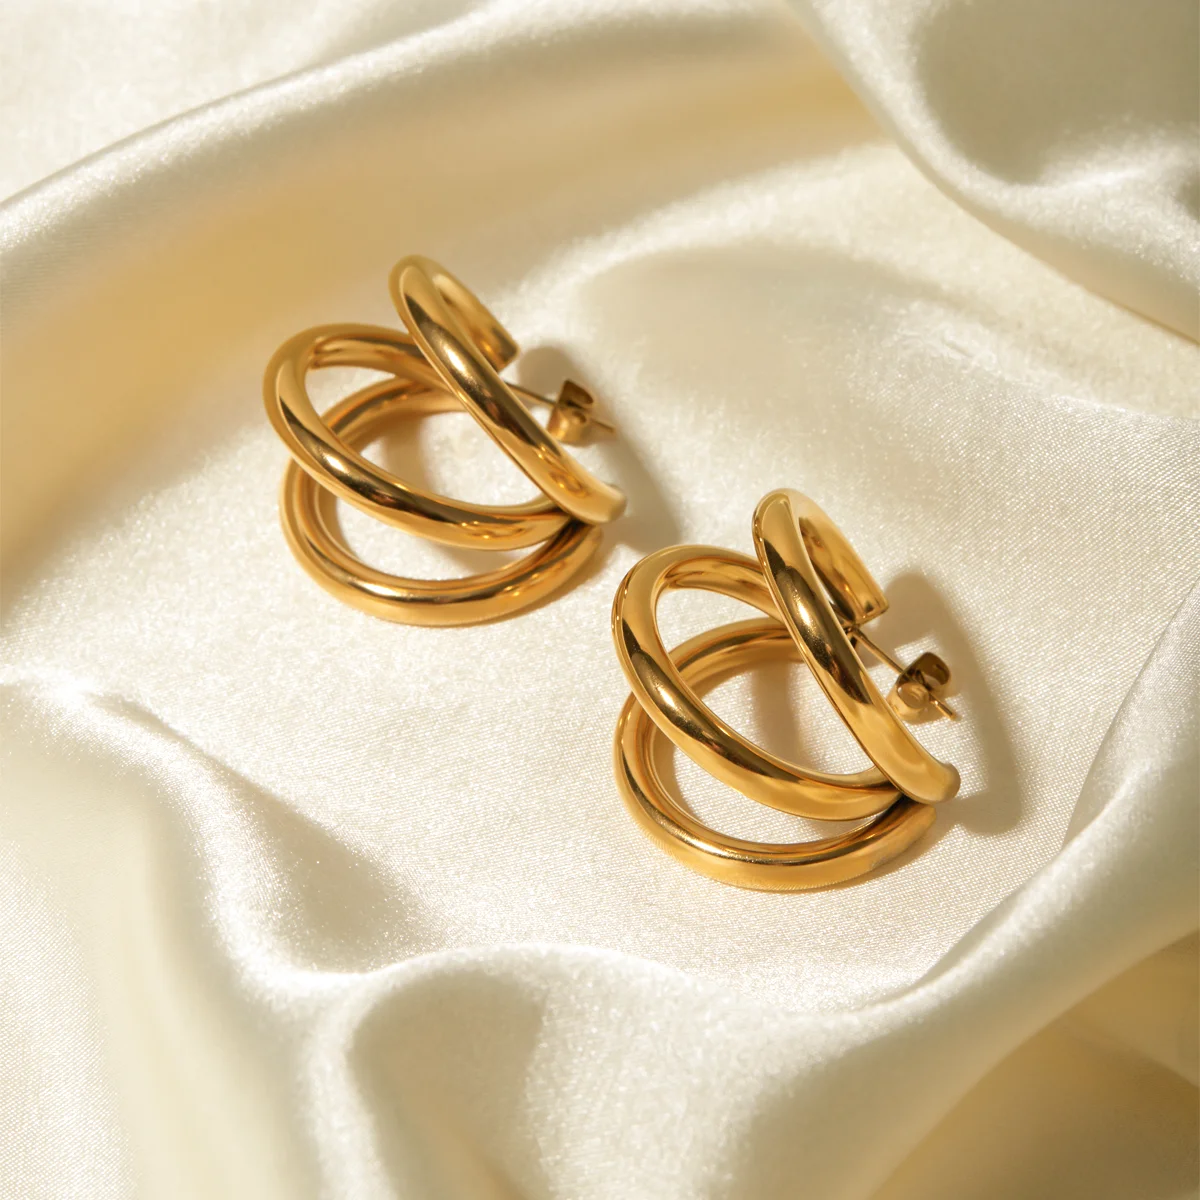 J&d Minimalist Stainless Steel 18k Small Gold Hoop Women Earrings ...